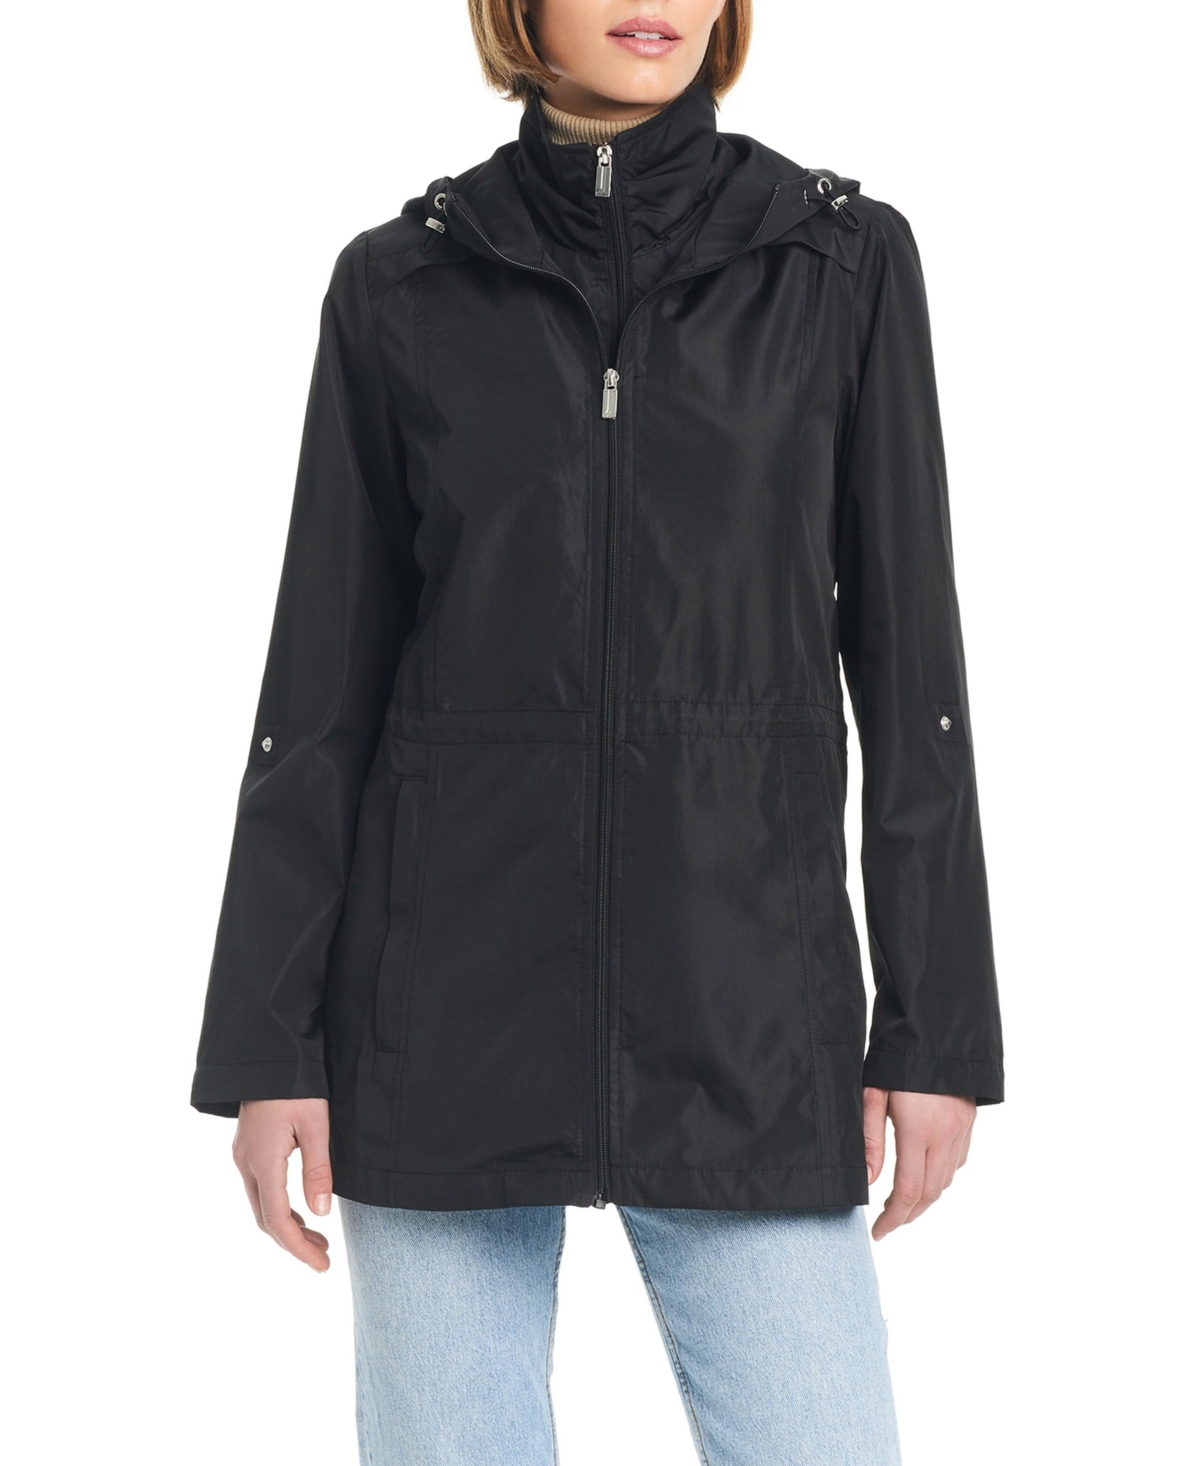 Women's Lightweight Packable Water-Resistant Jacket - Black